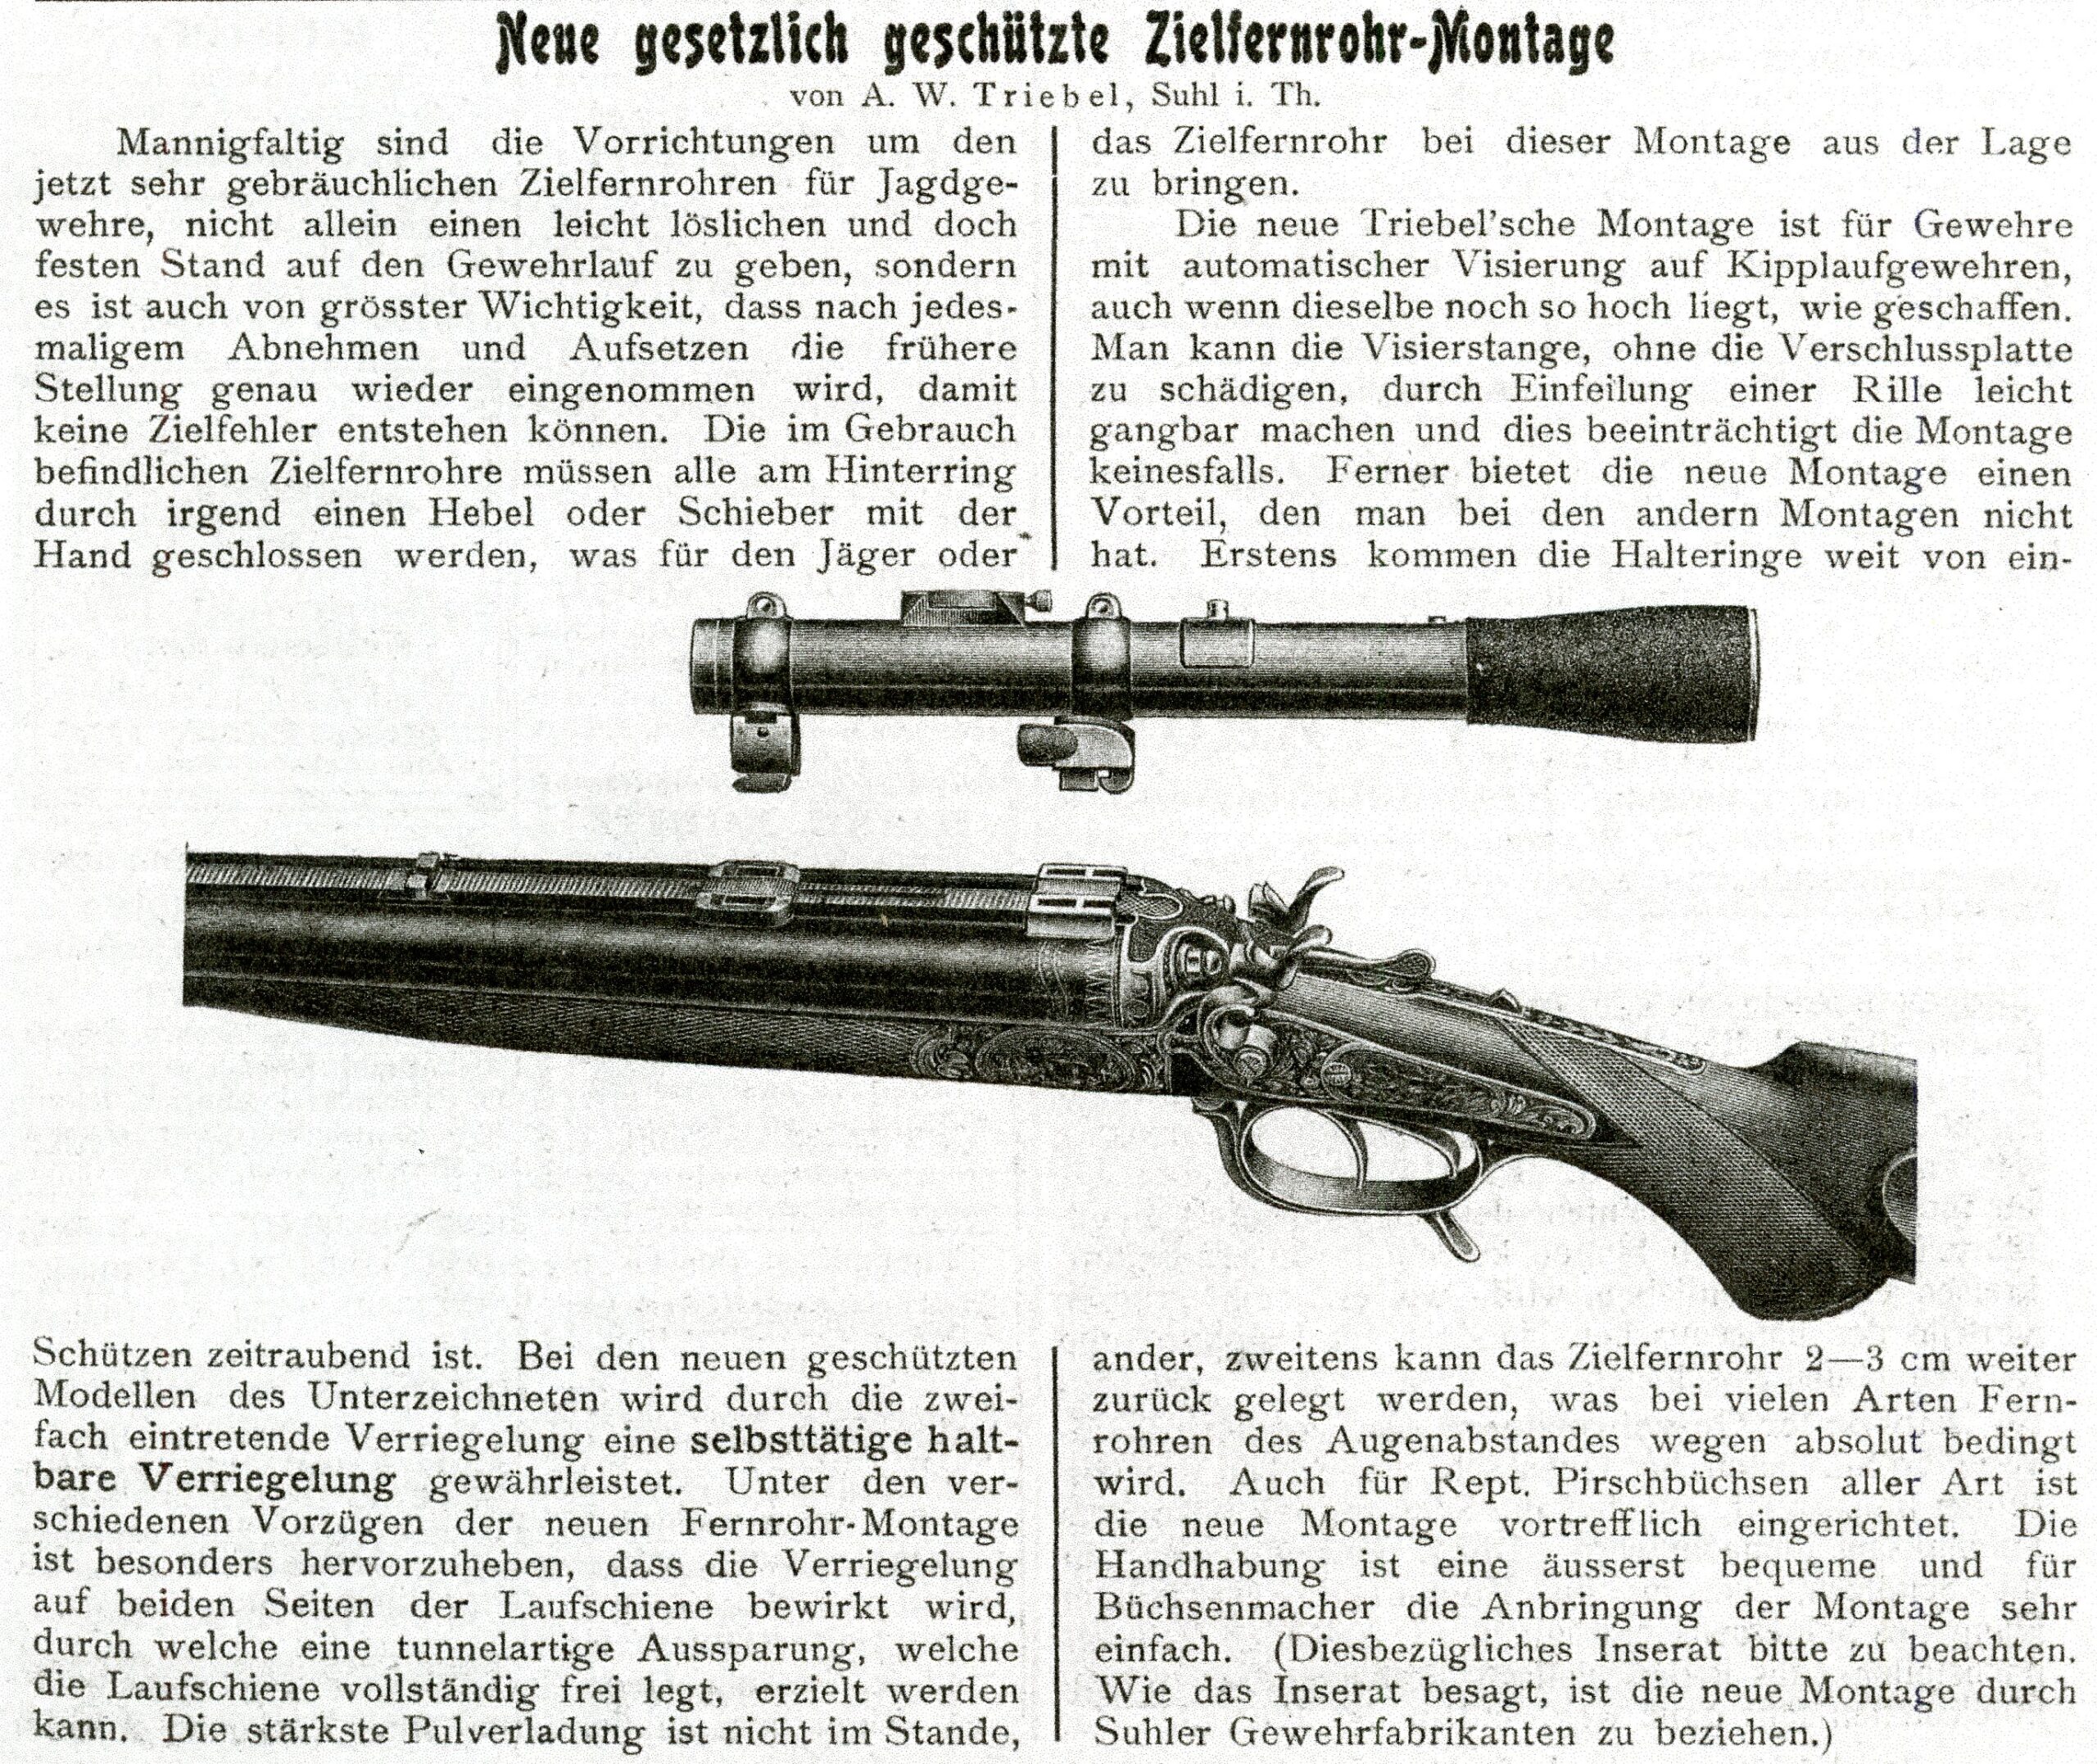 From the 1913 issue of Die Büchsenmacher und Waffenhandler